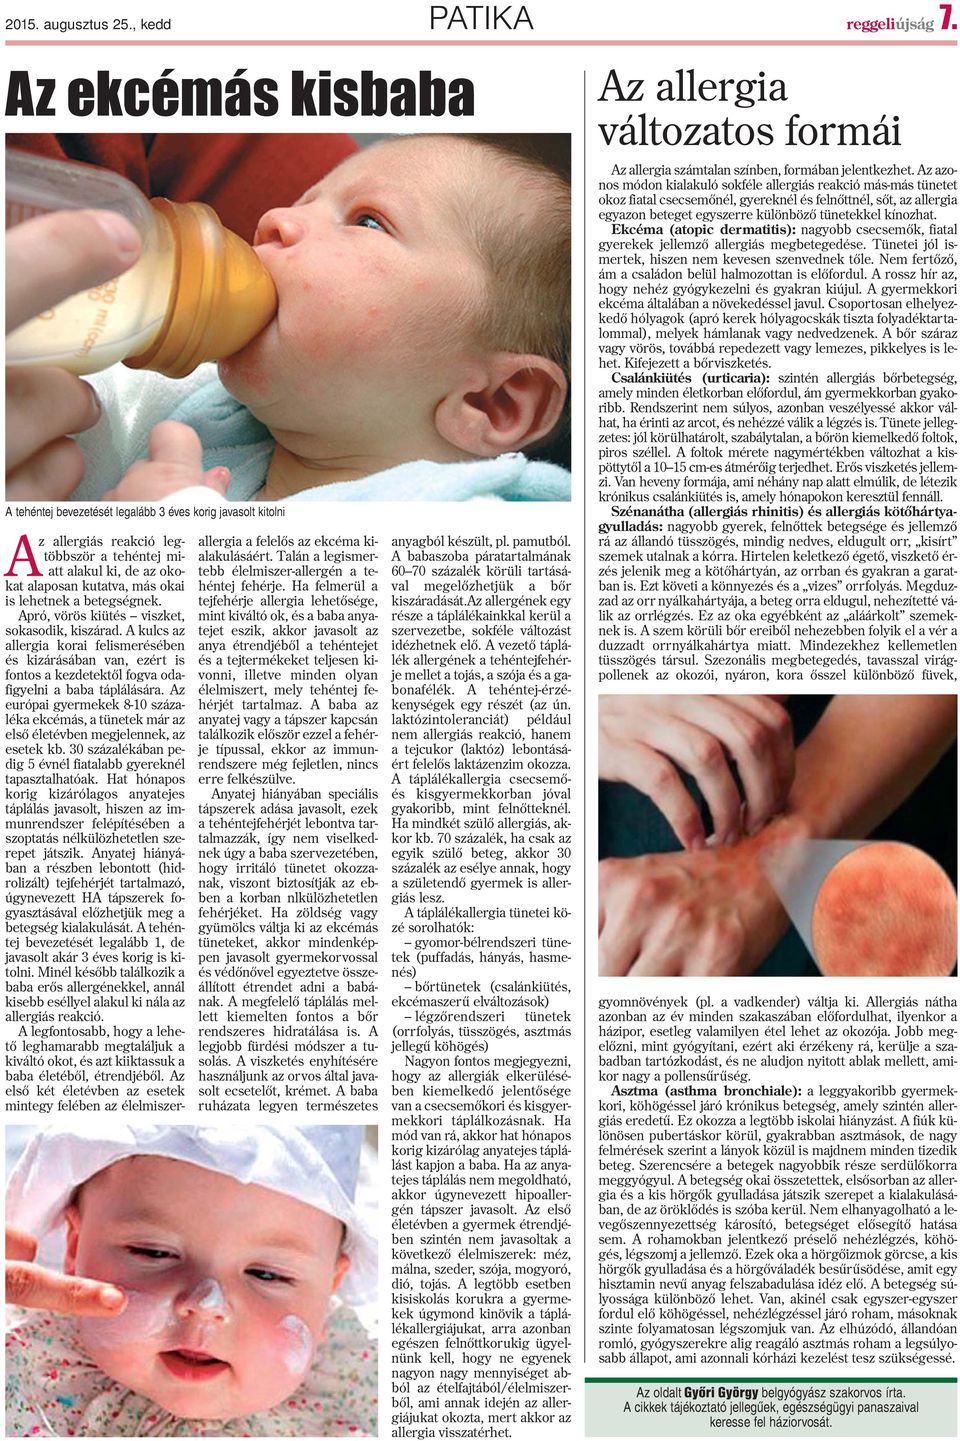 betegségnek. Apró, vörös kiütés viszket, sokasodik, kiszárad. A kulcs az allergia korai felismerésében és kizárásában van, ezért is fontos a kezdetektõl fogva odafigyelni a baba táplálására.